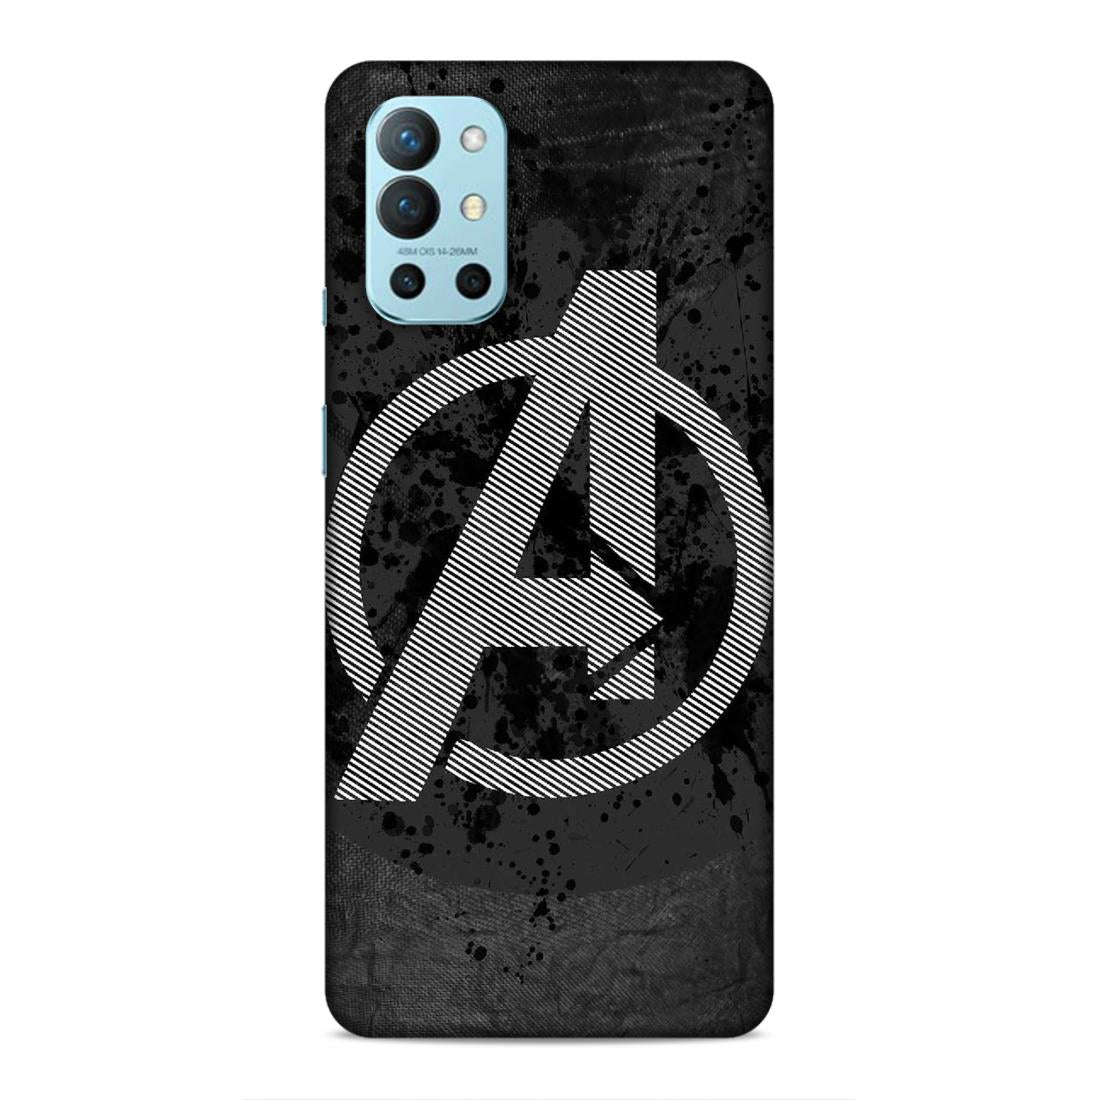 Avengers Symbol Hard Back Case For OnePlus 8T / 9R